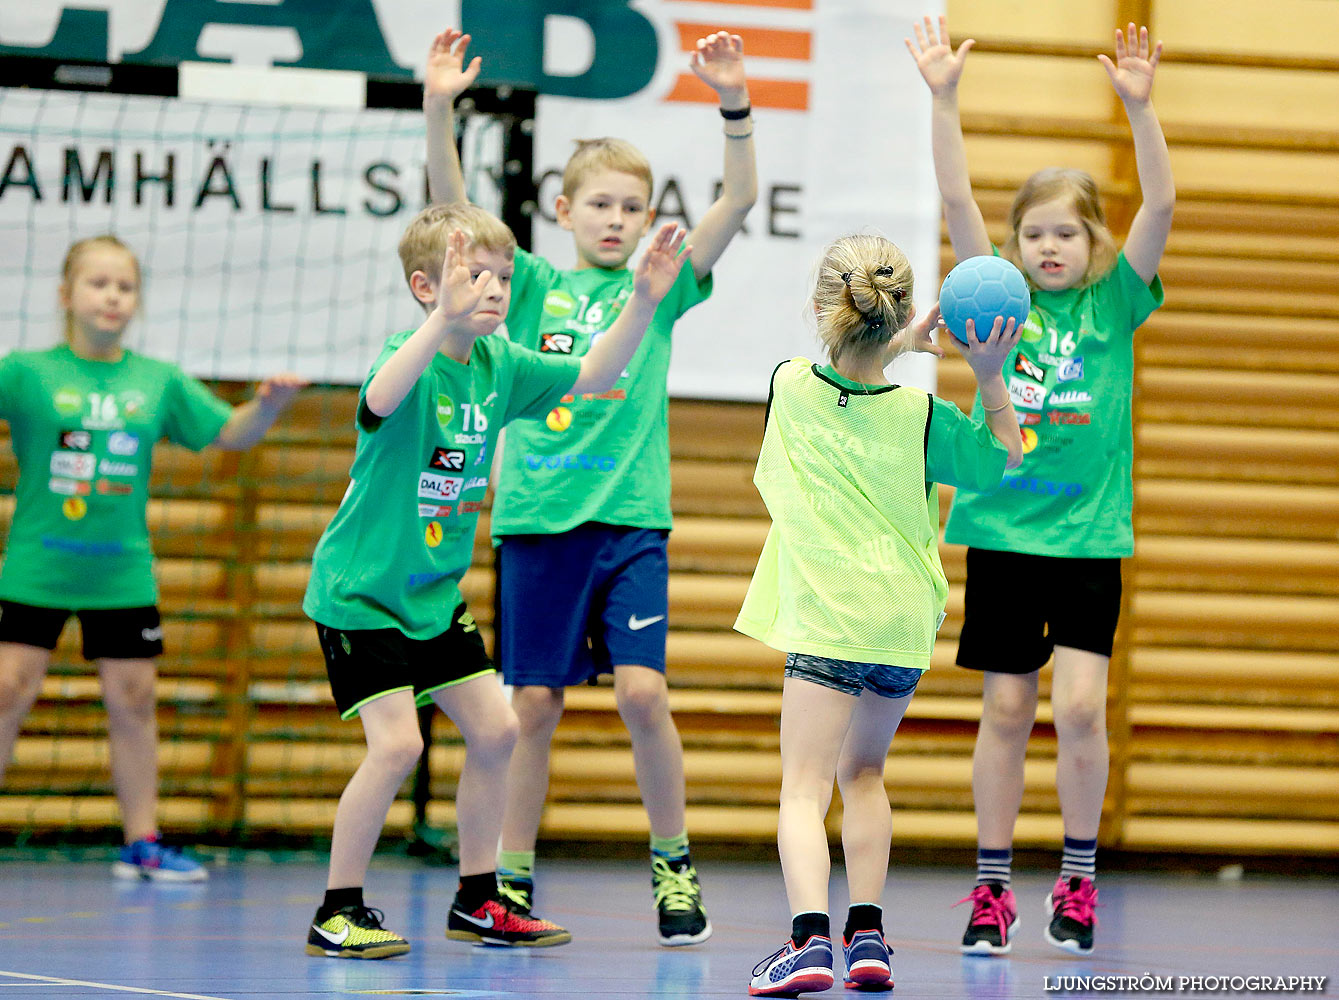 Klasshandboll Skövde 2016 Åldersklass 2007,mix,Arena Skövde,Skövde,Sverige,Handboll,,2016,132383